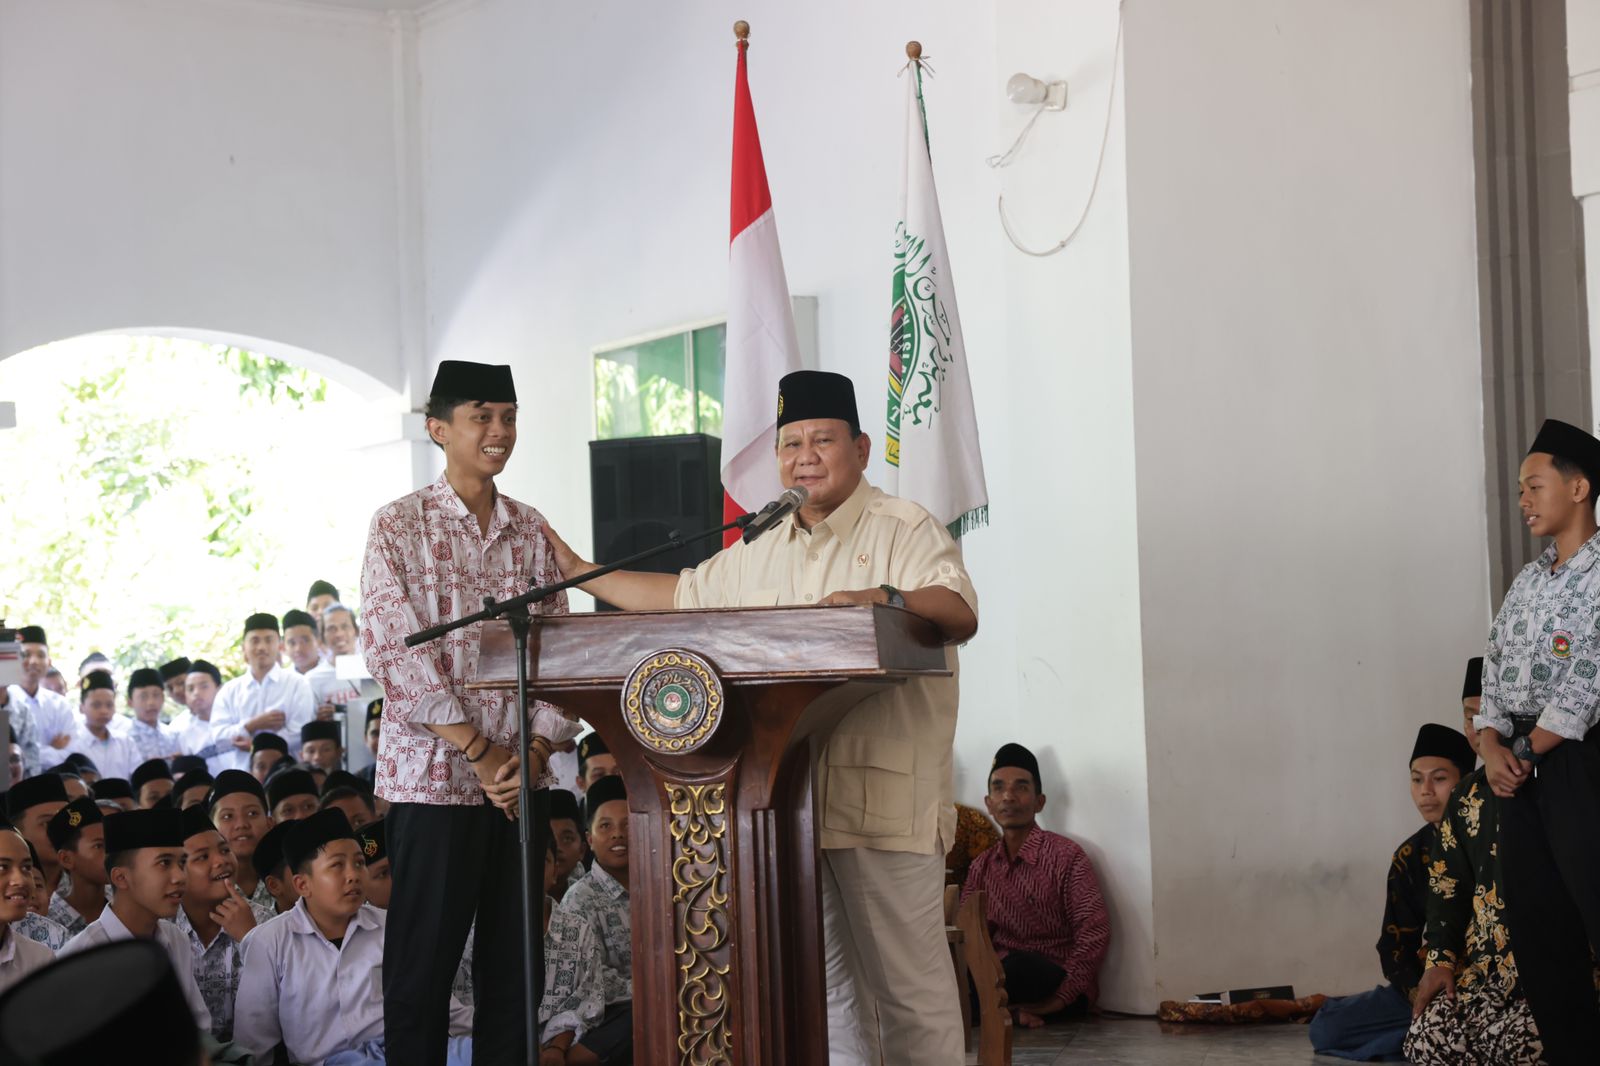 Prabowo saat memberi kuis kepada santri (Sinpo.id/Tim Media)